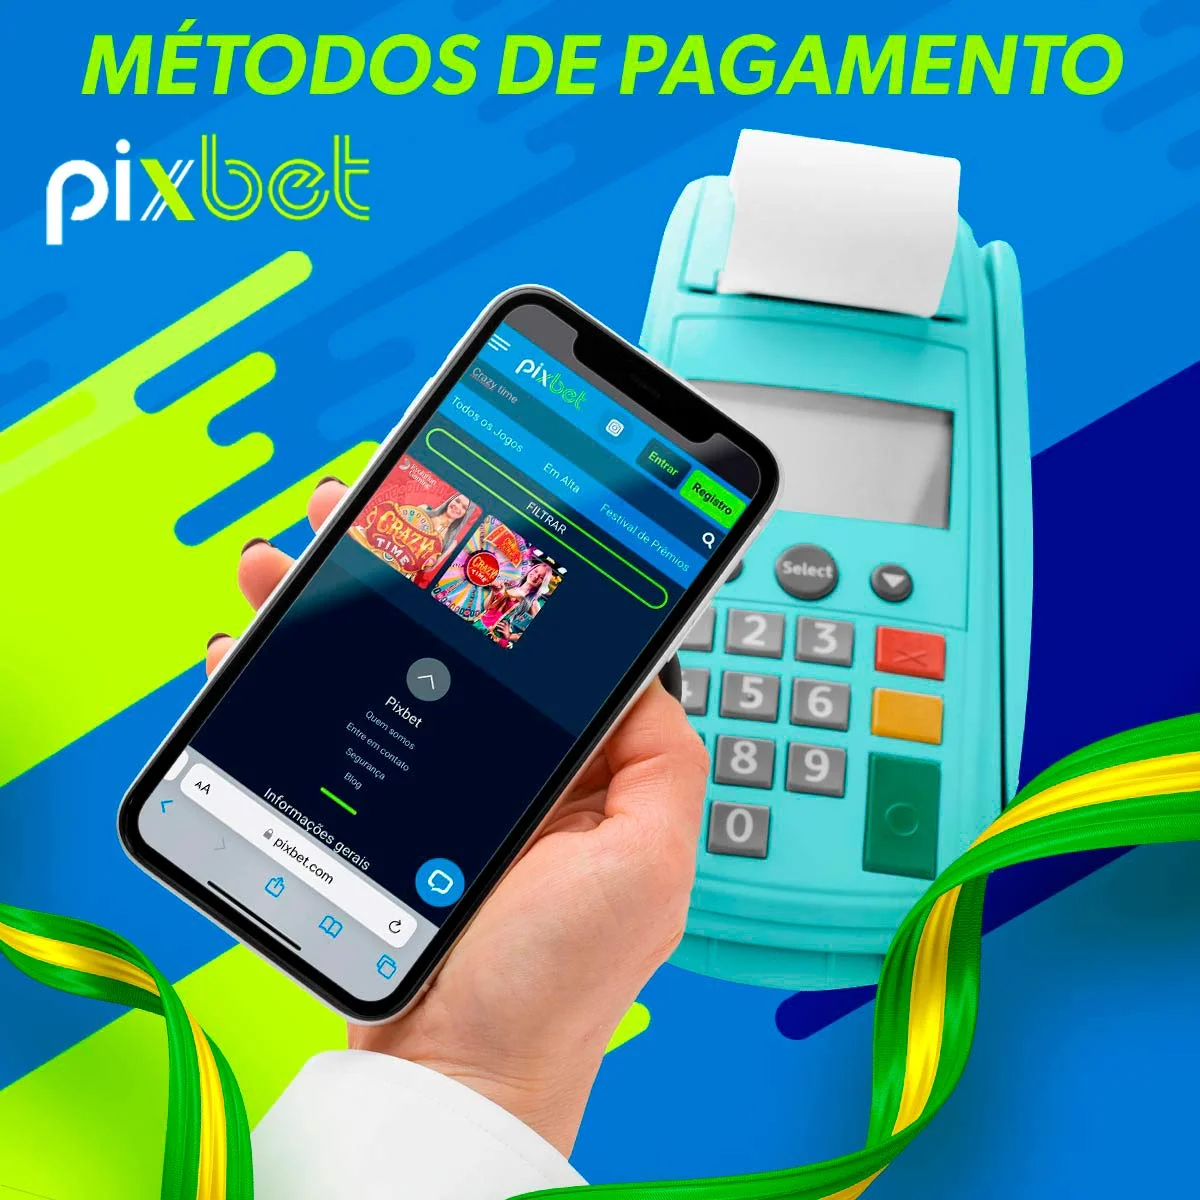 Métodos de pagamento rápidos e seguros estão disponíveis na aplicação Pixbet